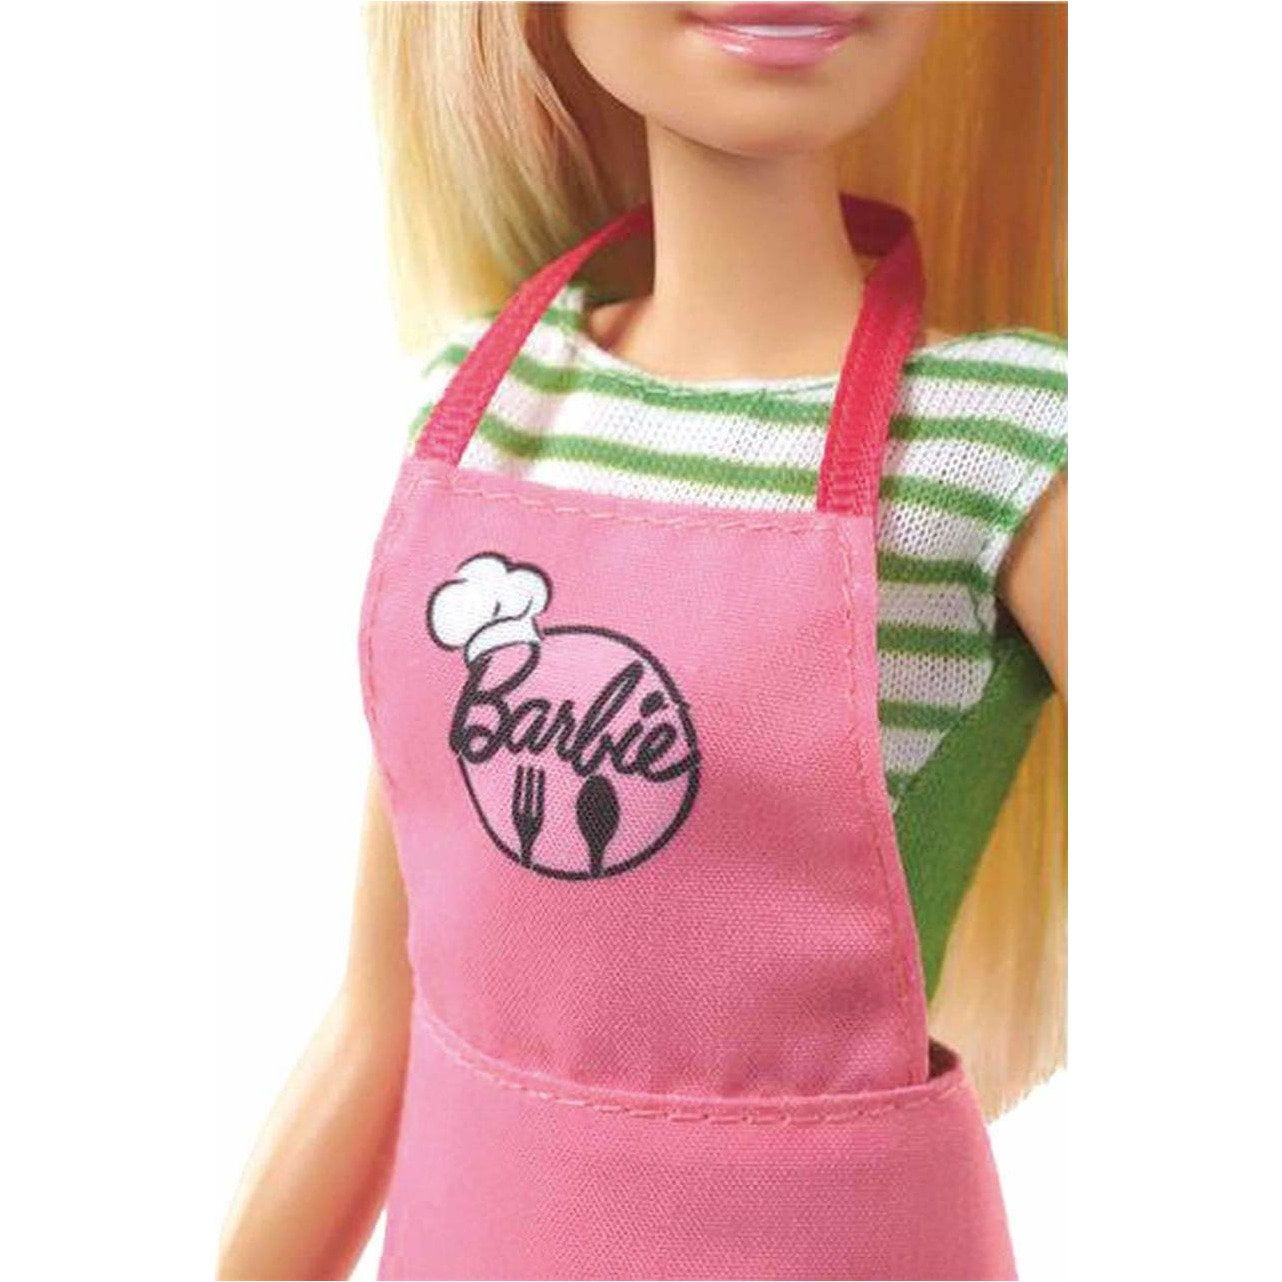 Barbie and Ken Cafe Doll Set - Walmart.com